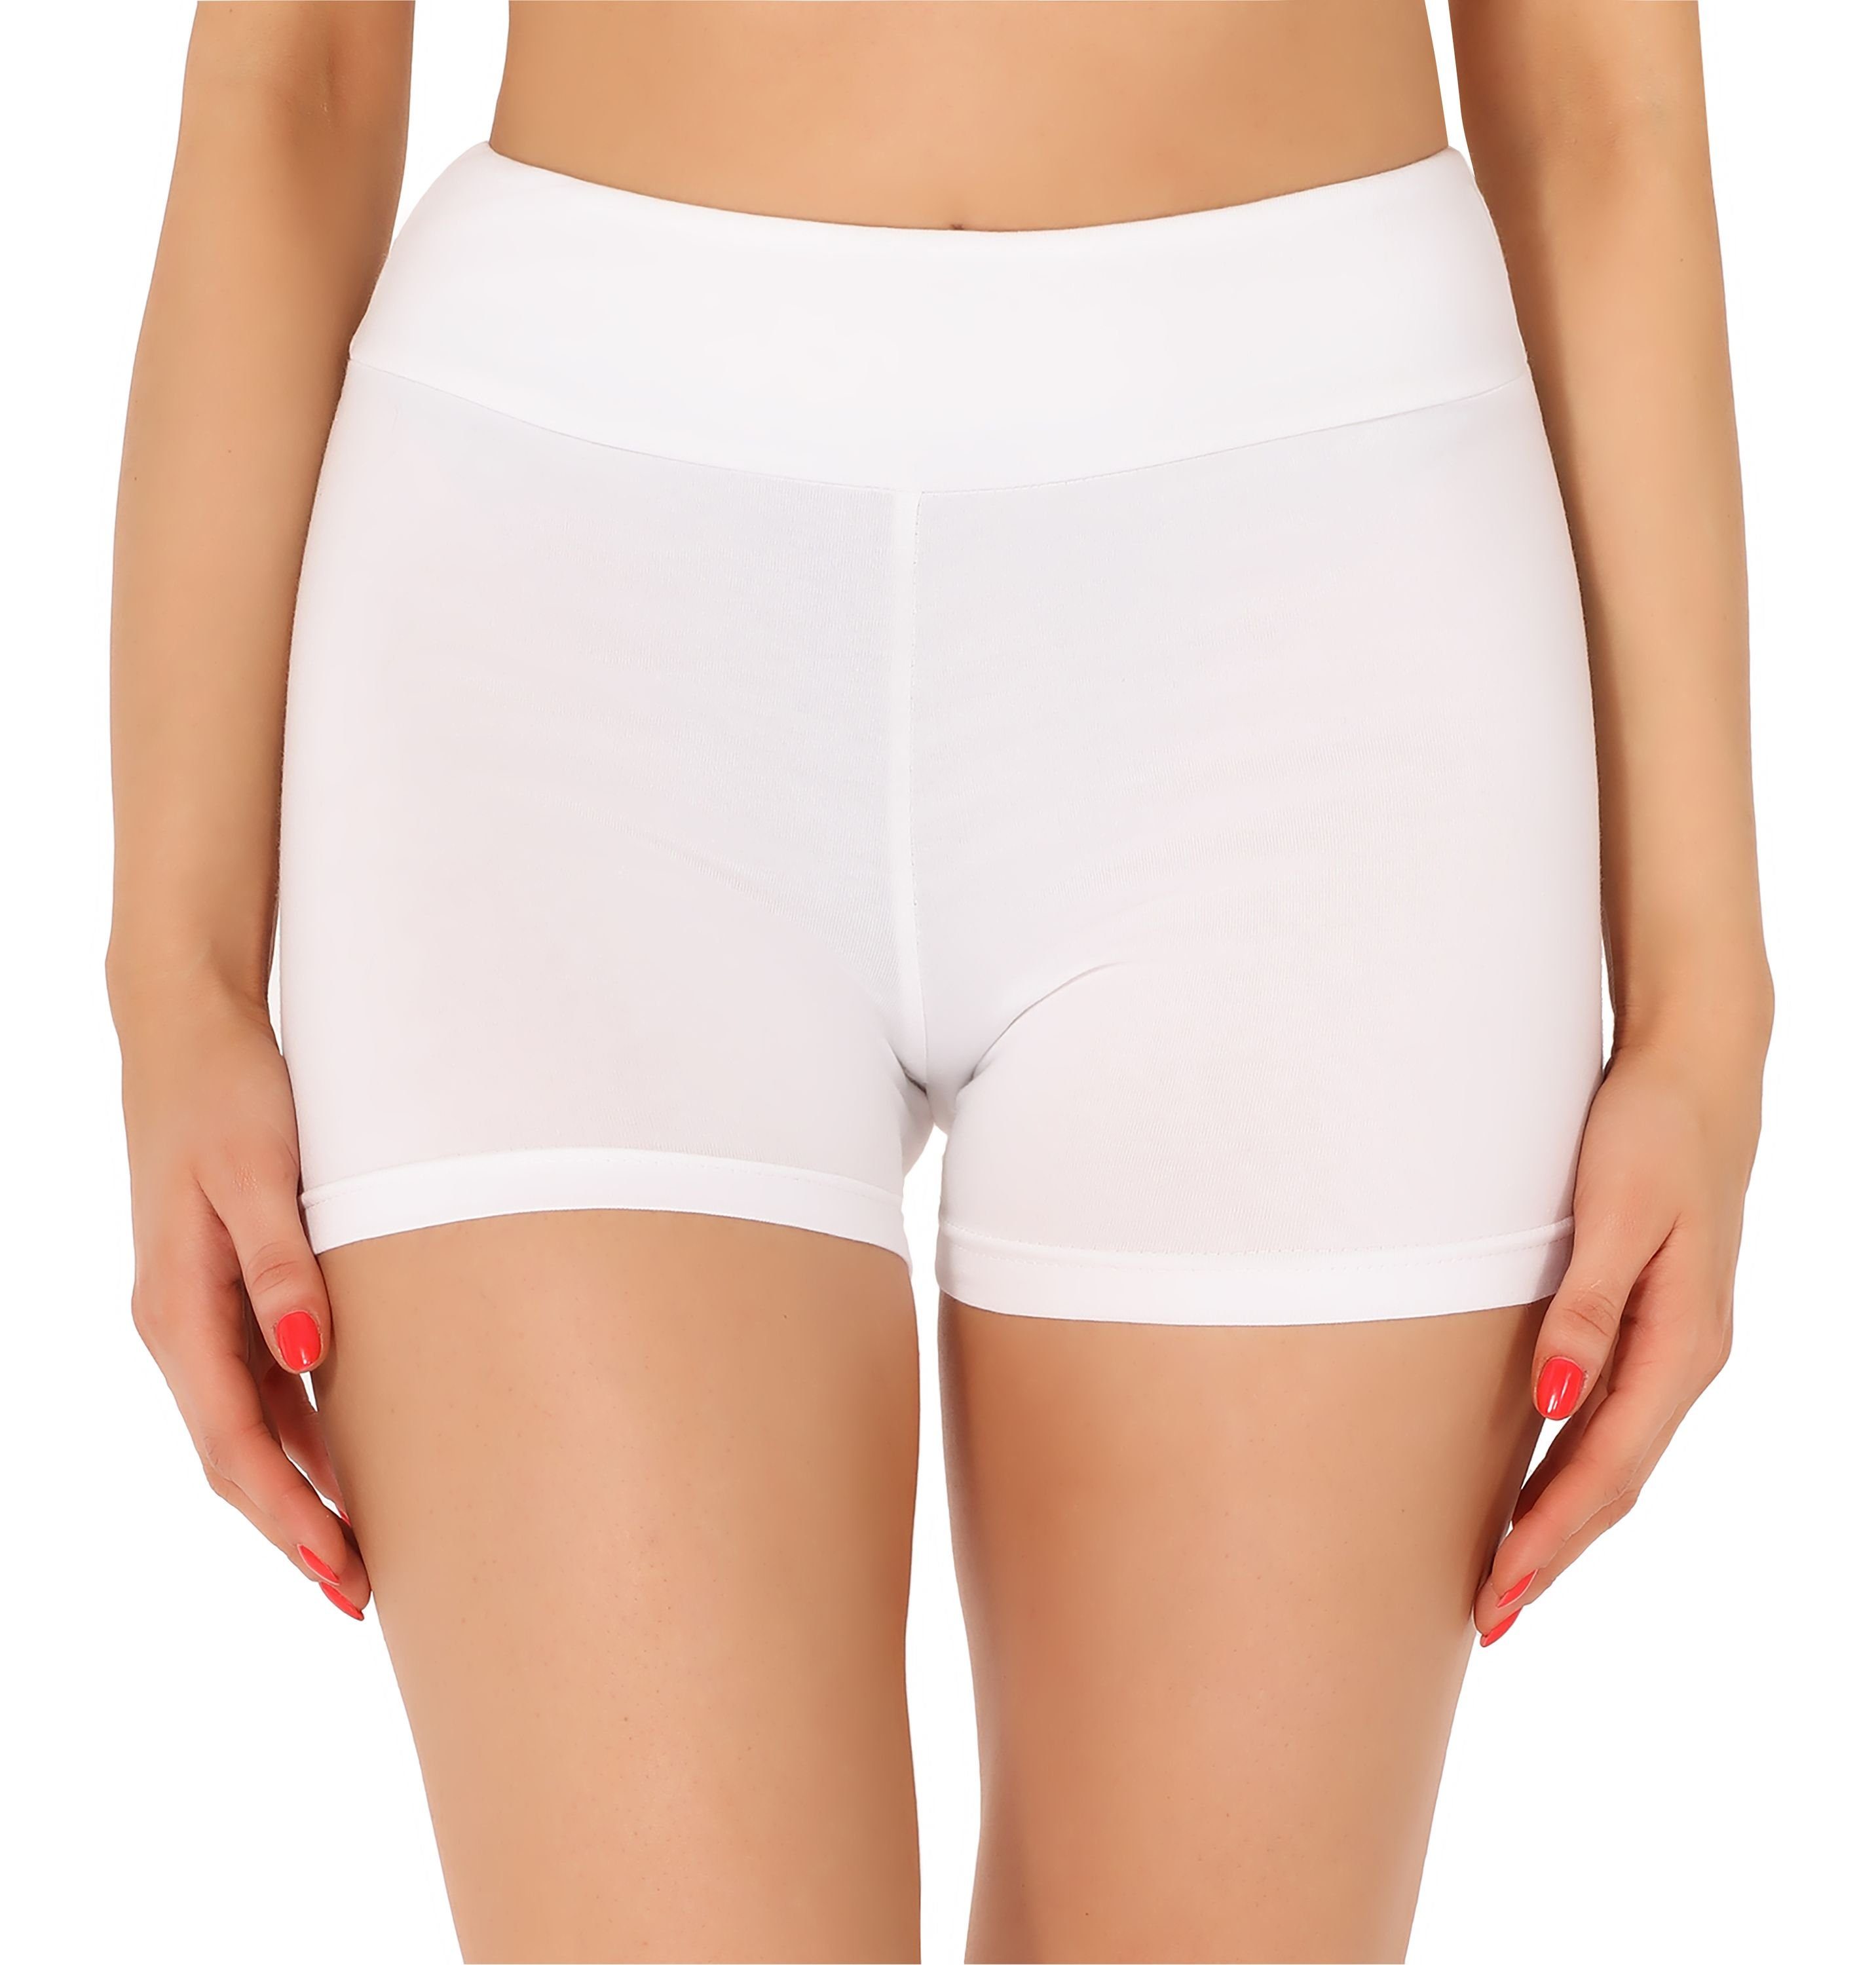 MS10-359 Damen Radlerhose Leggings Shorts Weiß Unterhose (1-tlg) Boxershorts kurze Merry Hose Bund elastischer Style